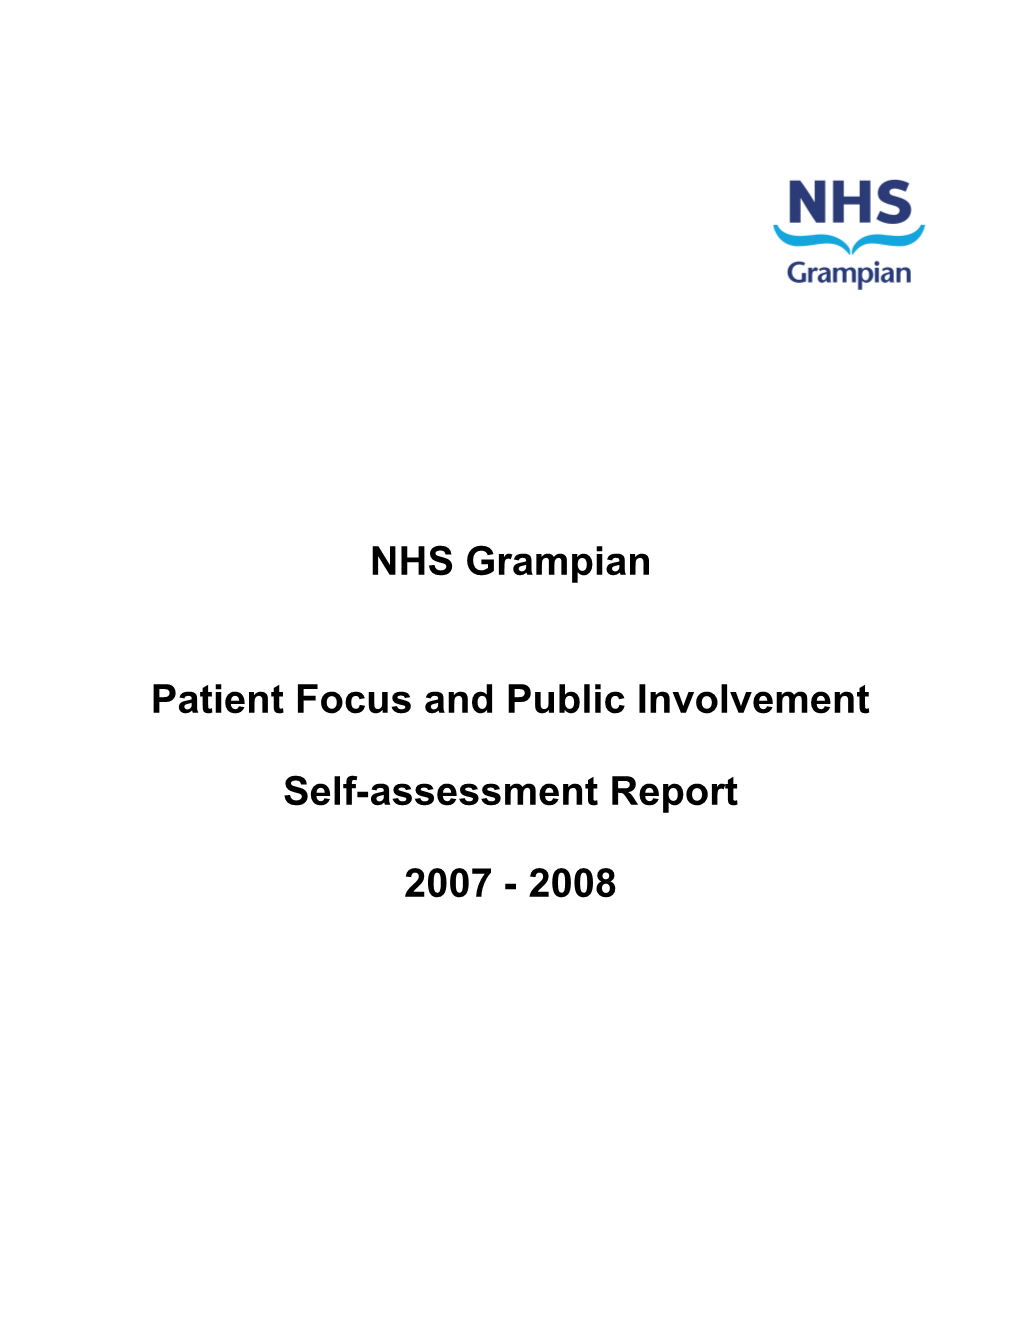 PFPI Self Assessment Report 2007-08